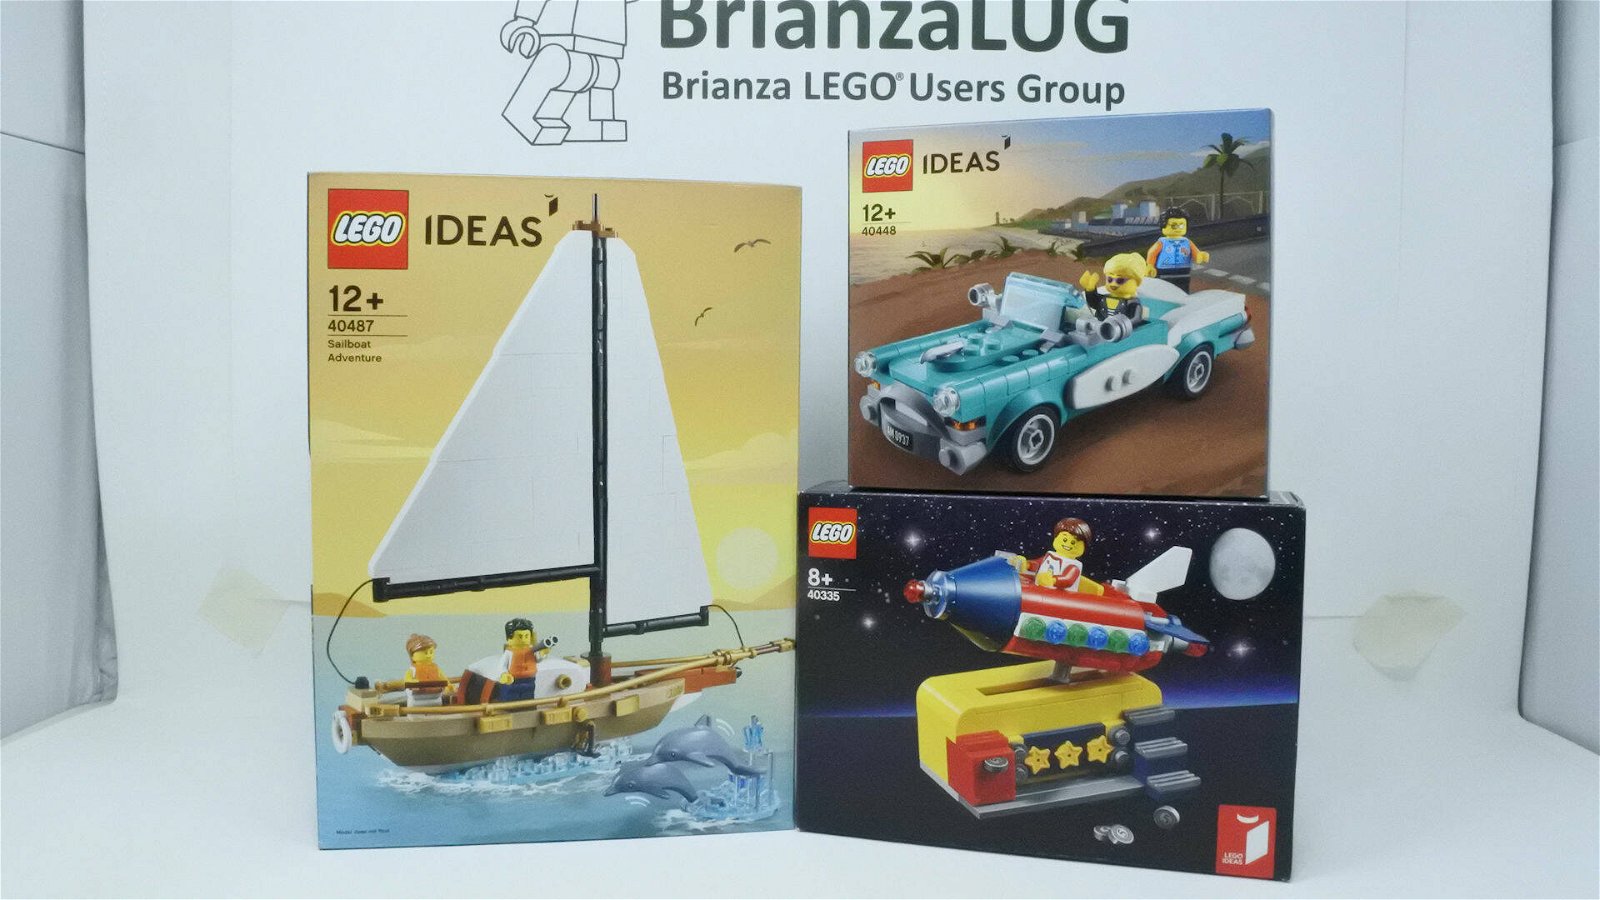 Immagine di BRICK MANIA. Costruiamo insieme i set GWP (Gift with purchase) di LEGO Ideas